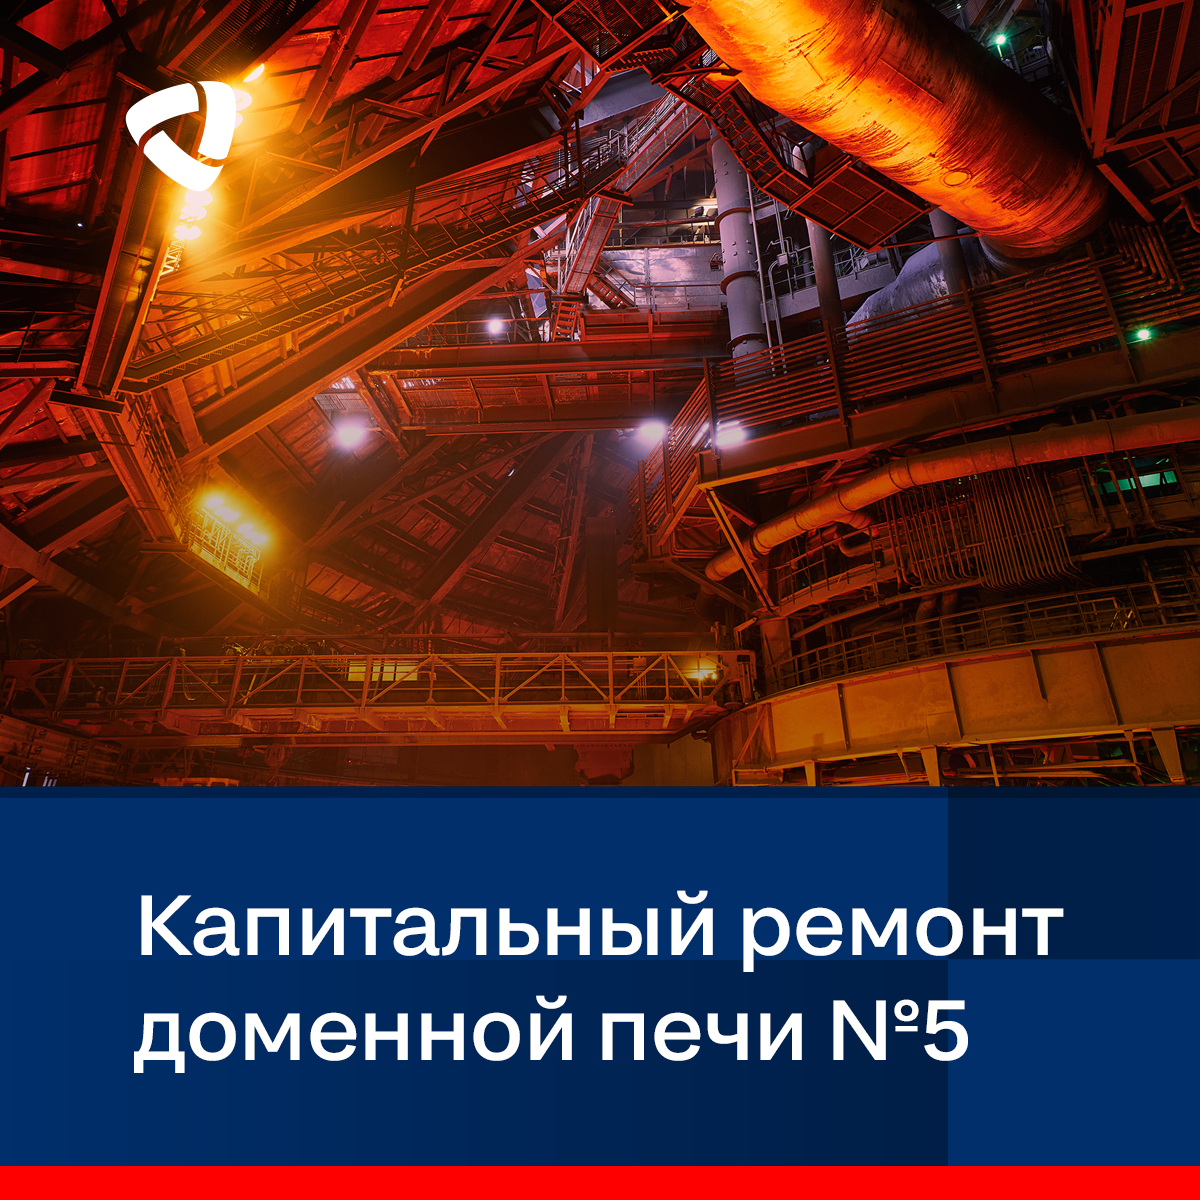 «Северянка» — крупнейший агрегат по производству чугуна не только на ЧерМК, но и российской металлургии. Ее текущая производительность — 4,2 млн тонн чугуна в год.